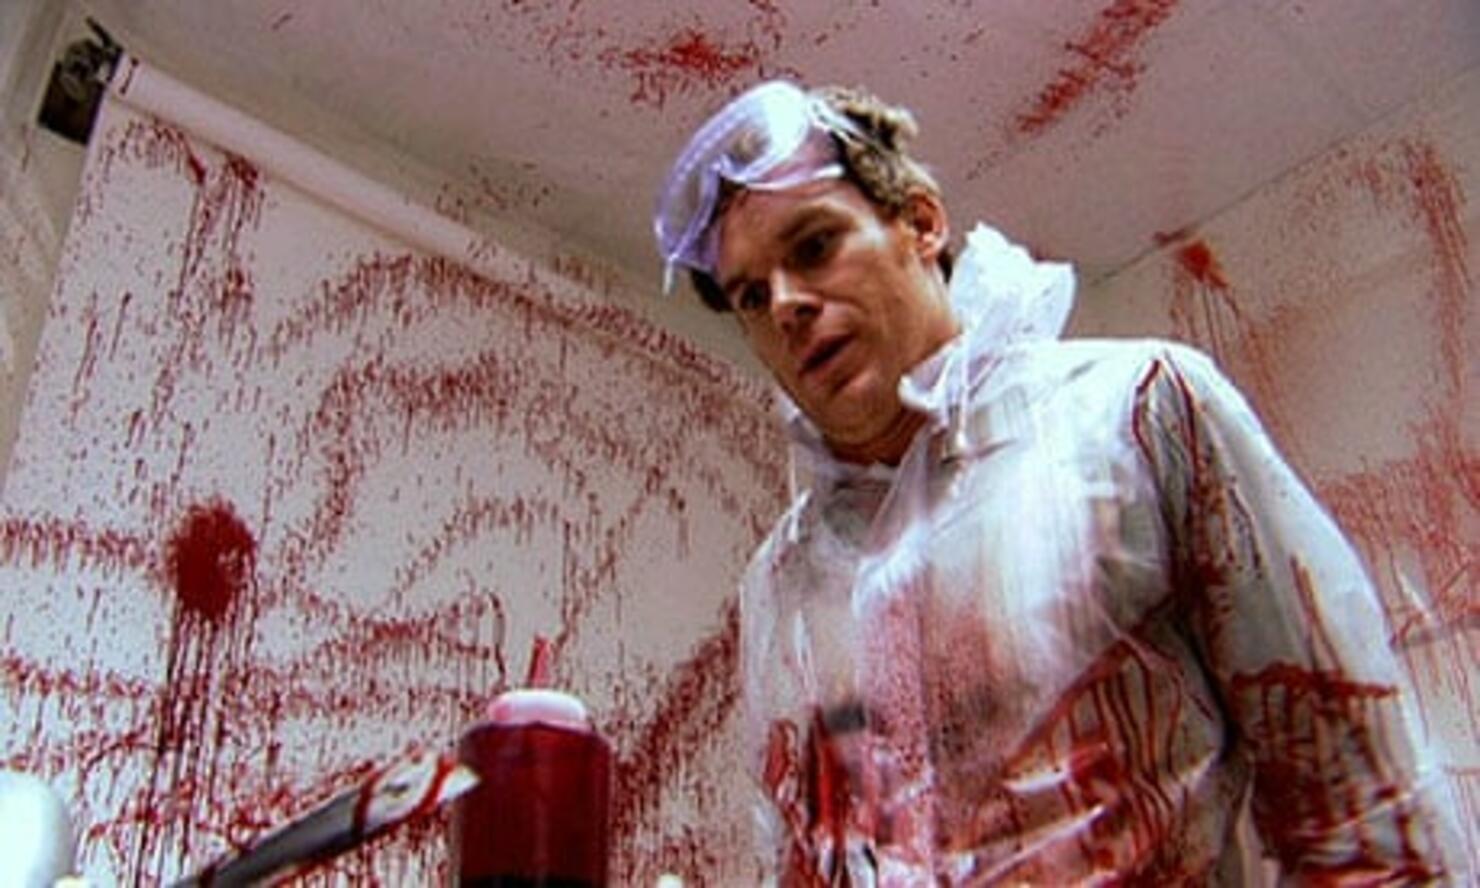 13) Dexter.